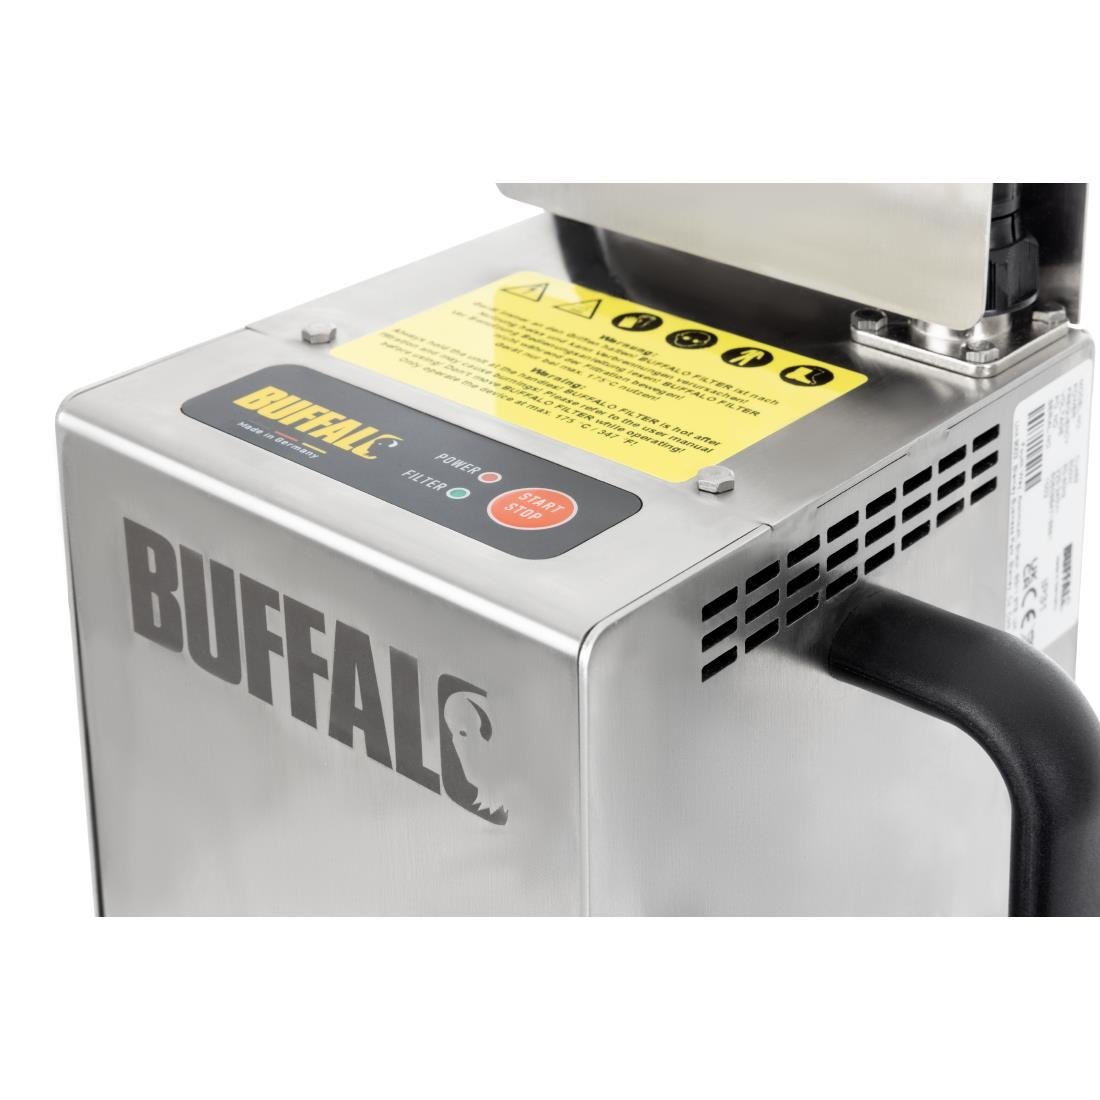 Filtre à huile de friture automatique Buffalo